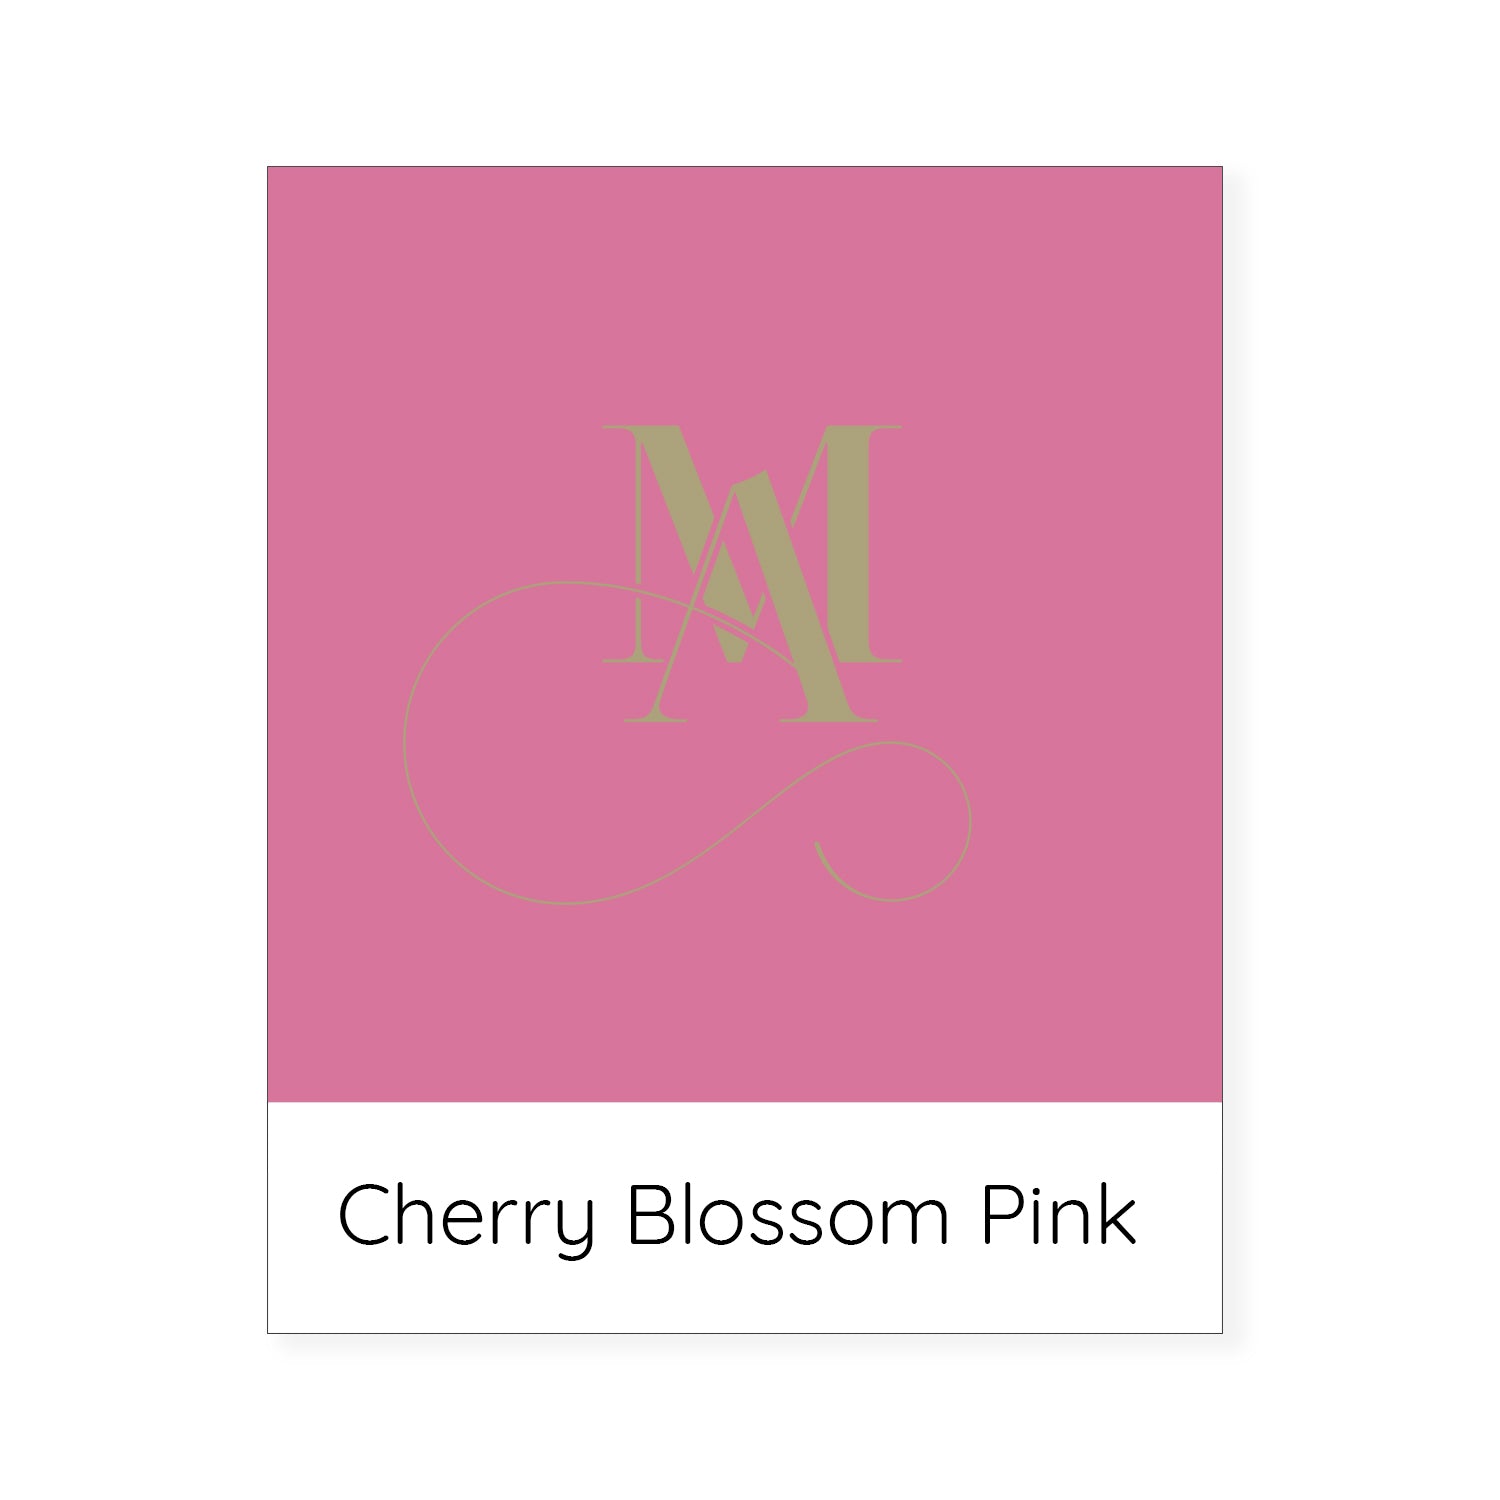 cherry blossom modeabode colour swatch. 